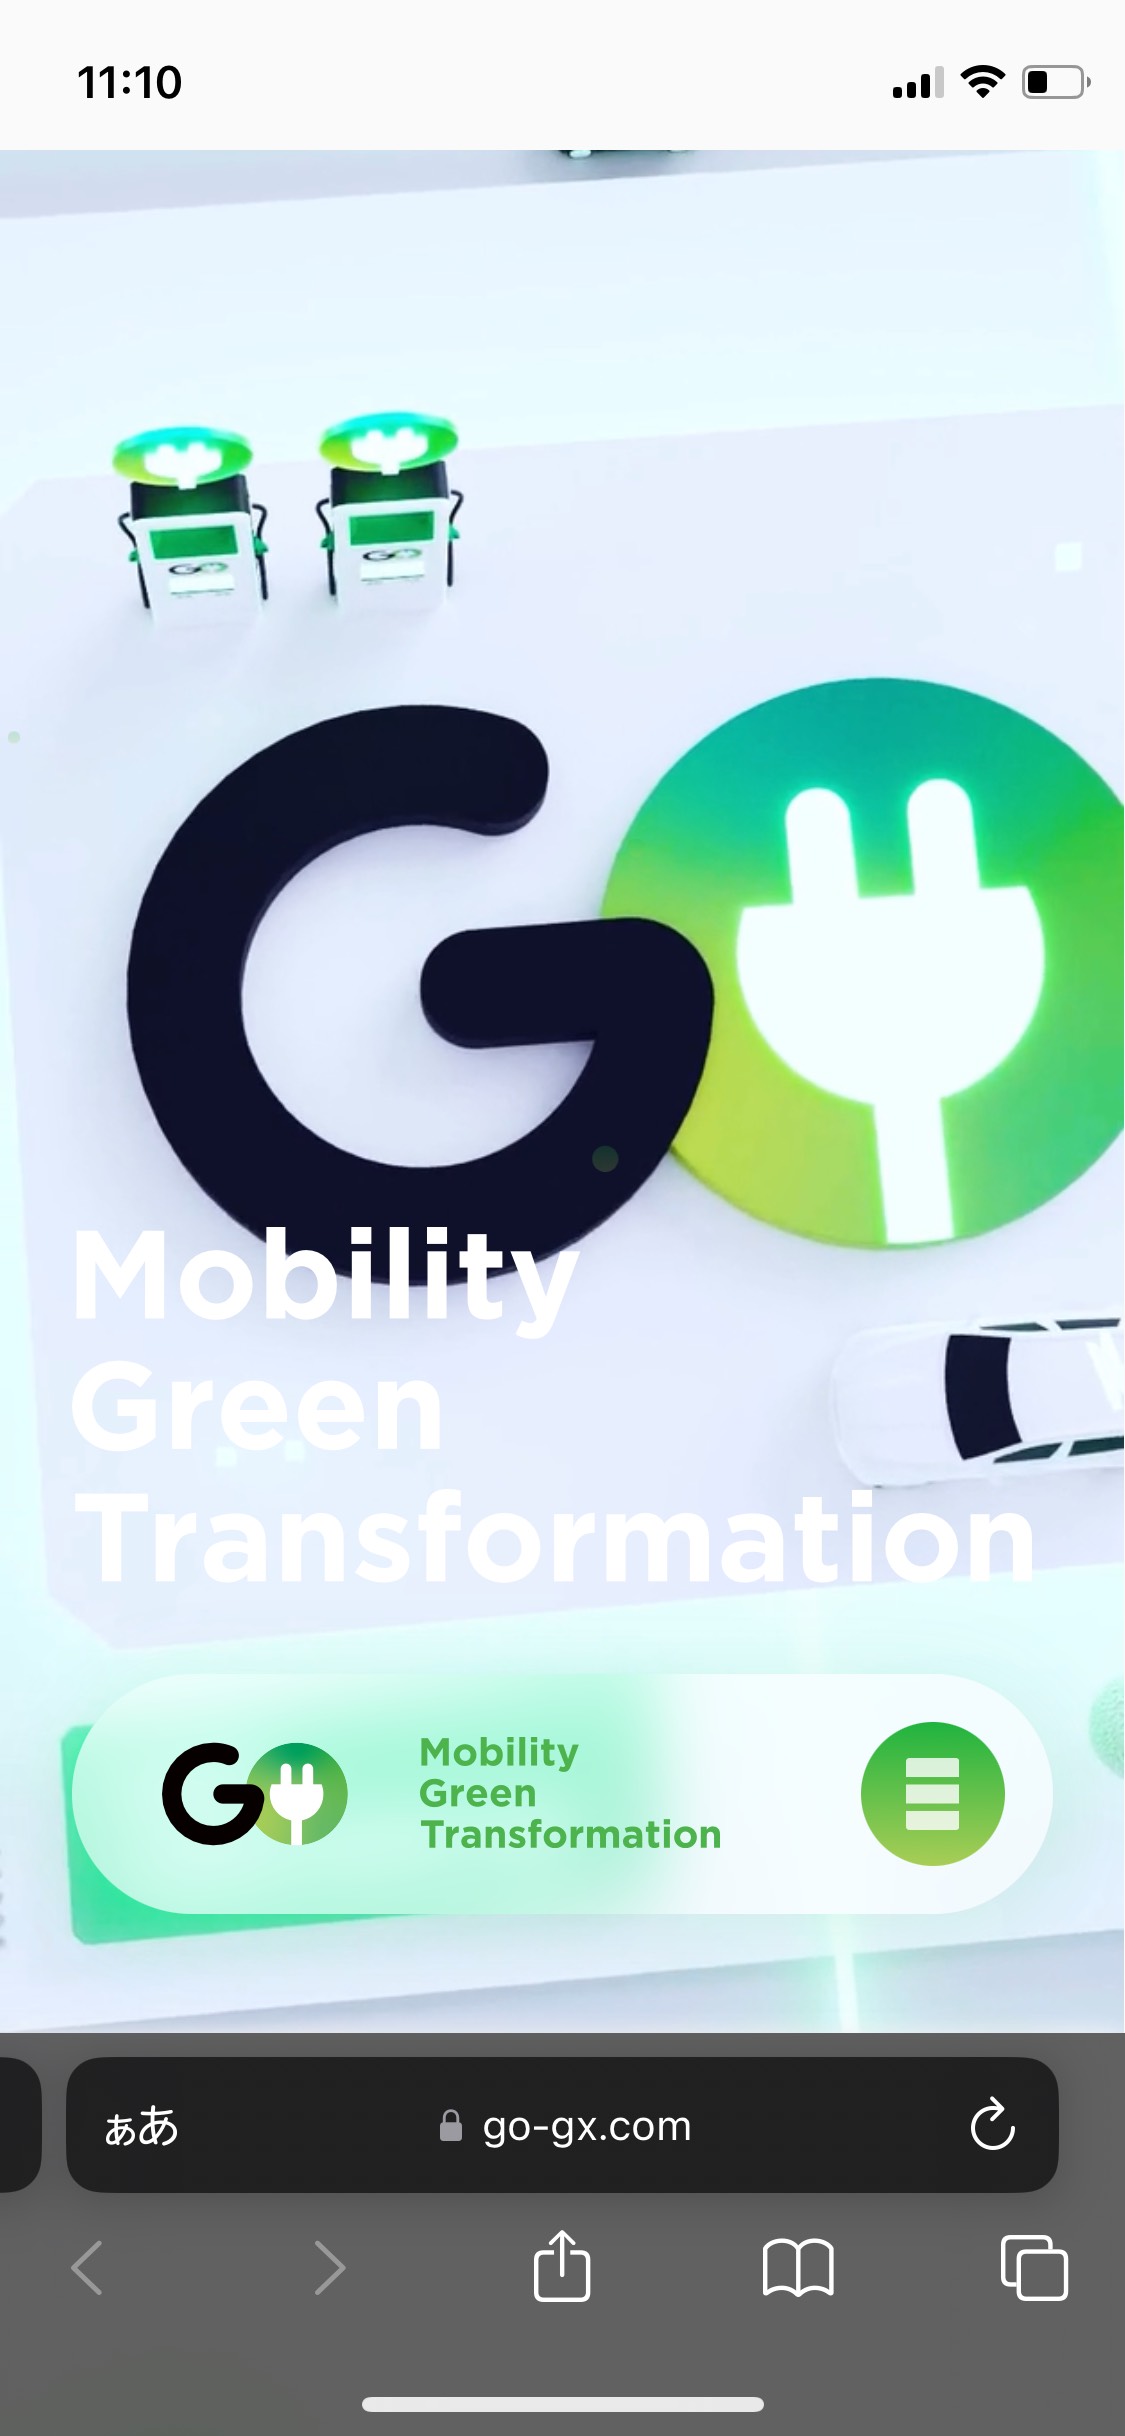 スマートフォンデザイン GO株式会社の脱炭素サービスGX | 脱炭素化に向けたEV関連サービス